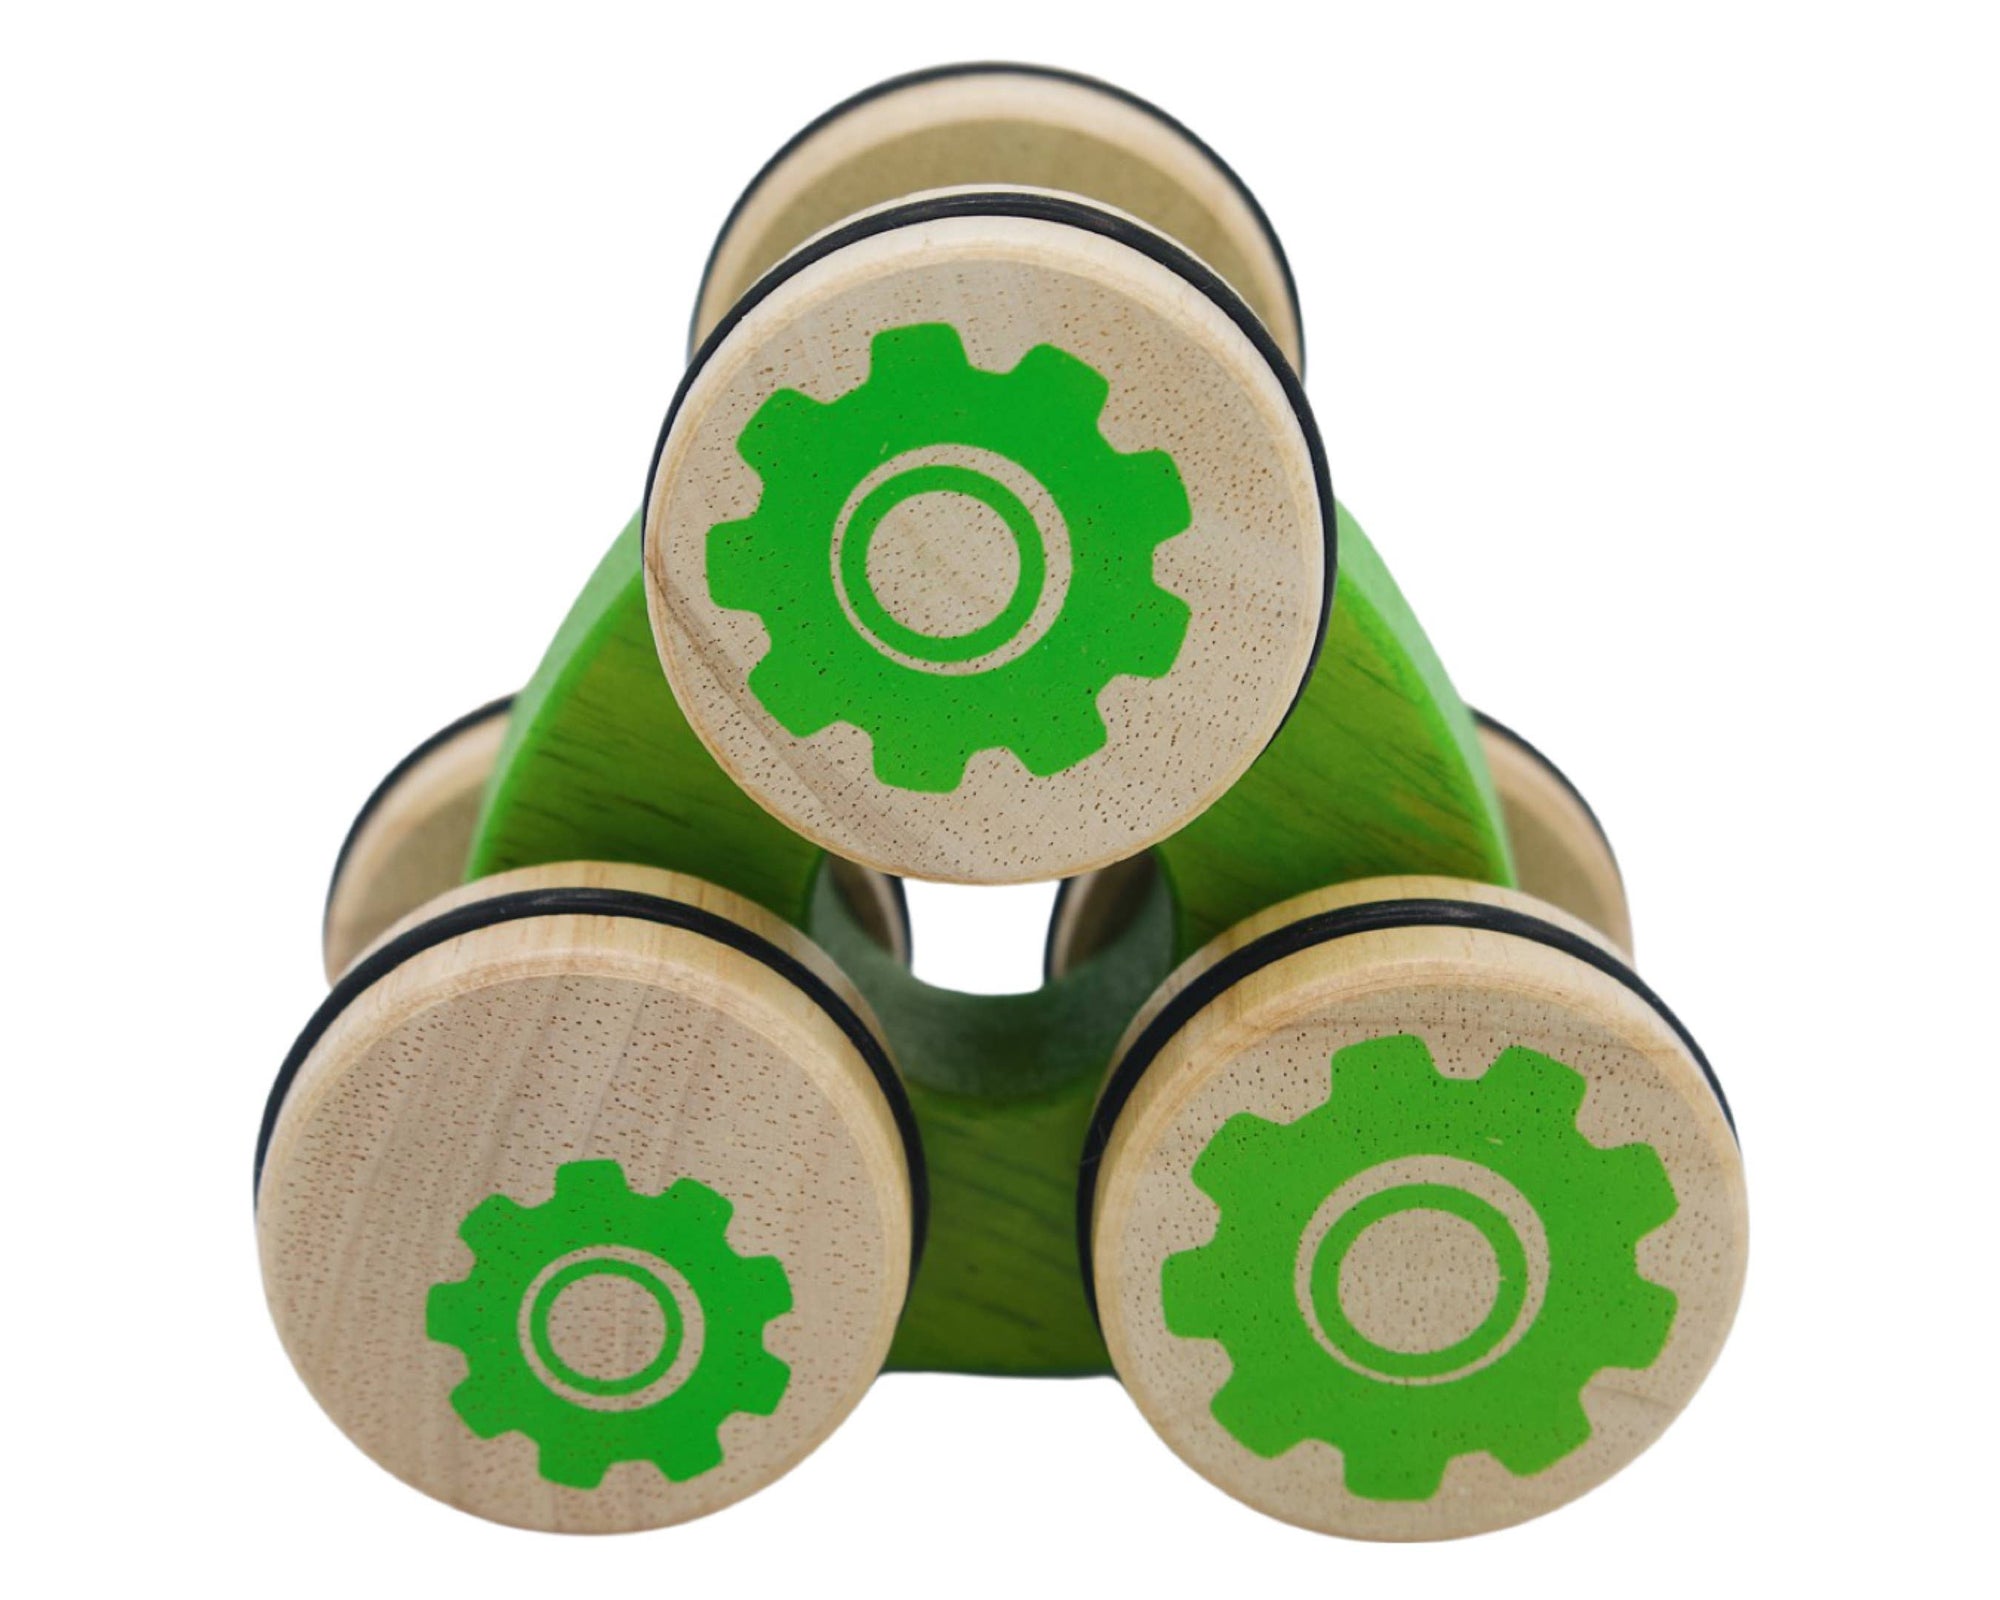 Tumbler - 3 Wheel Push Toy: Green